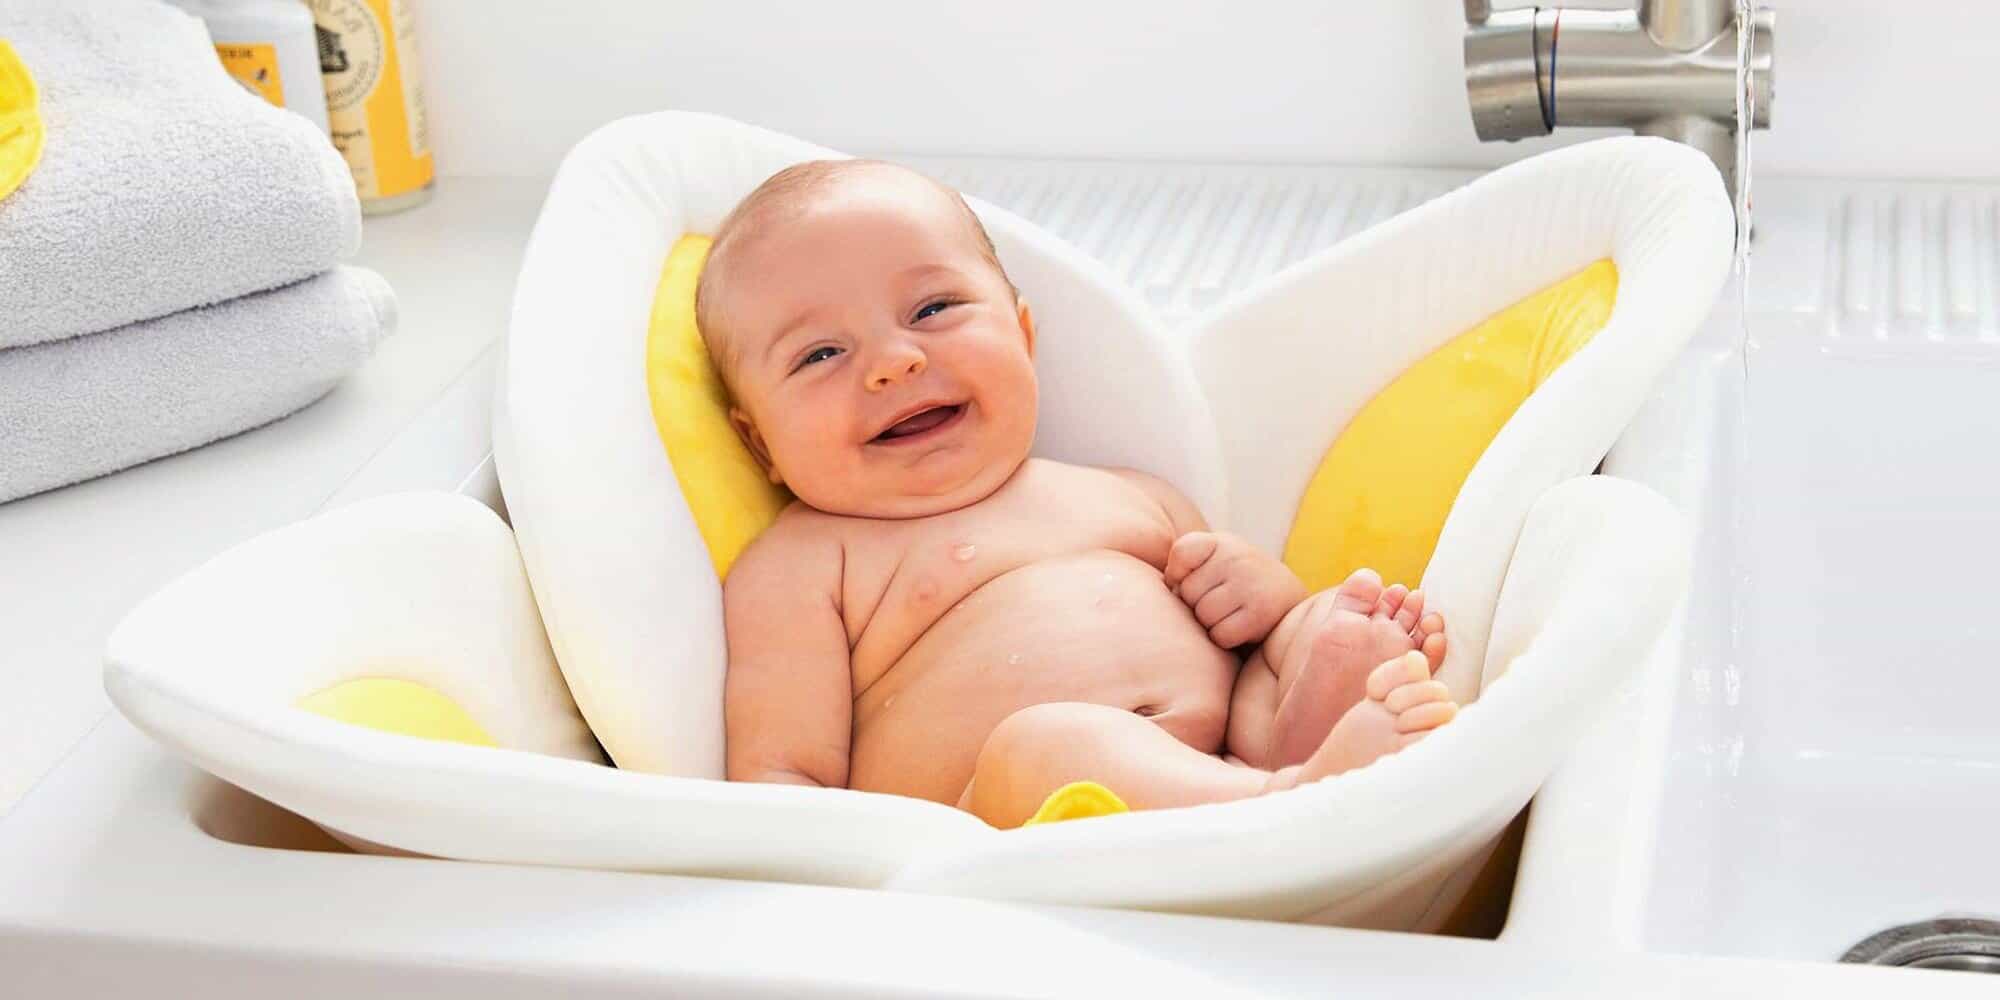 Using A Baby Bath Sink Insert Baby Bath Moments